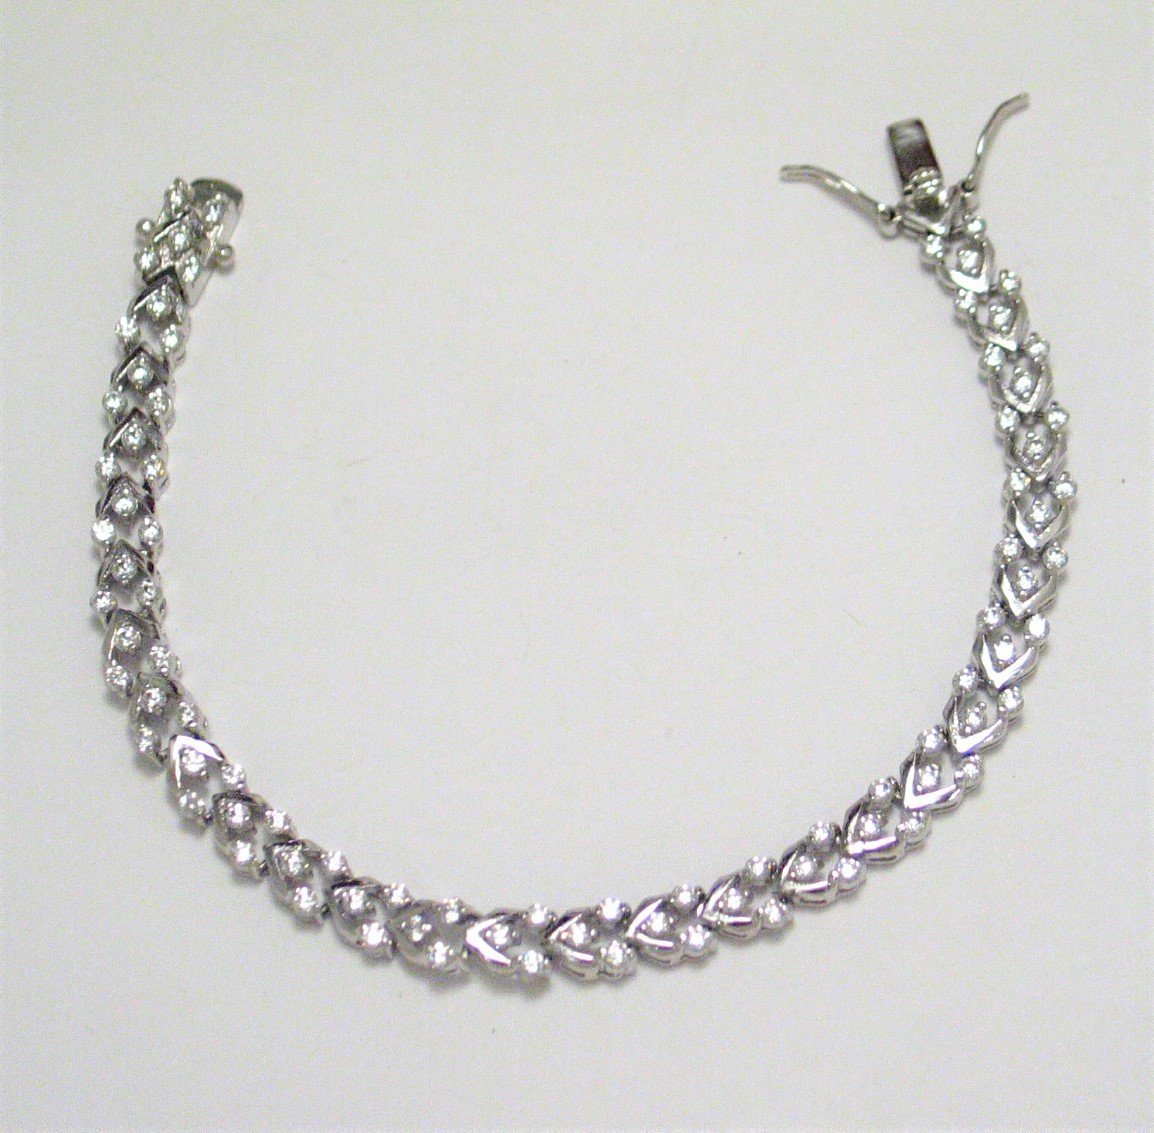 Sterling Silver Bracelet, 7" Shimmering Chevron Design Zirconia Stone Tennis Bracelet - Blingschlingers Jewelry